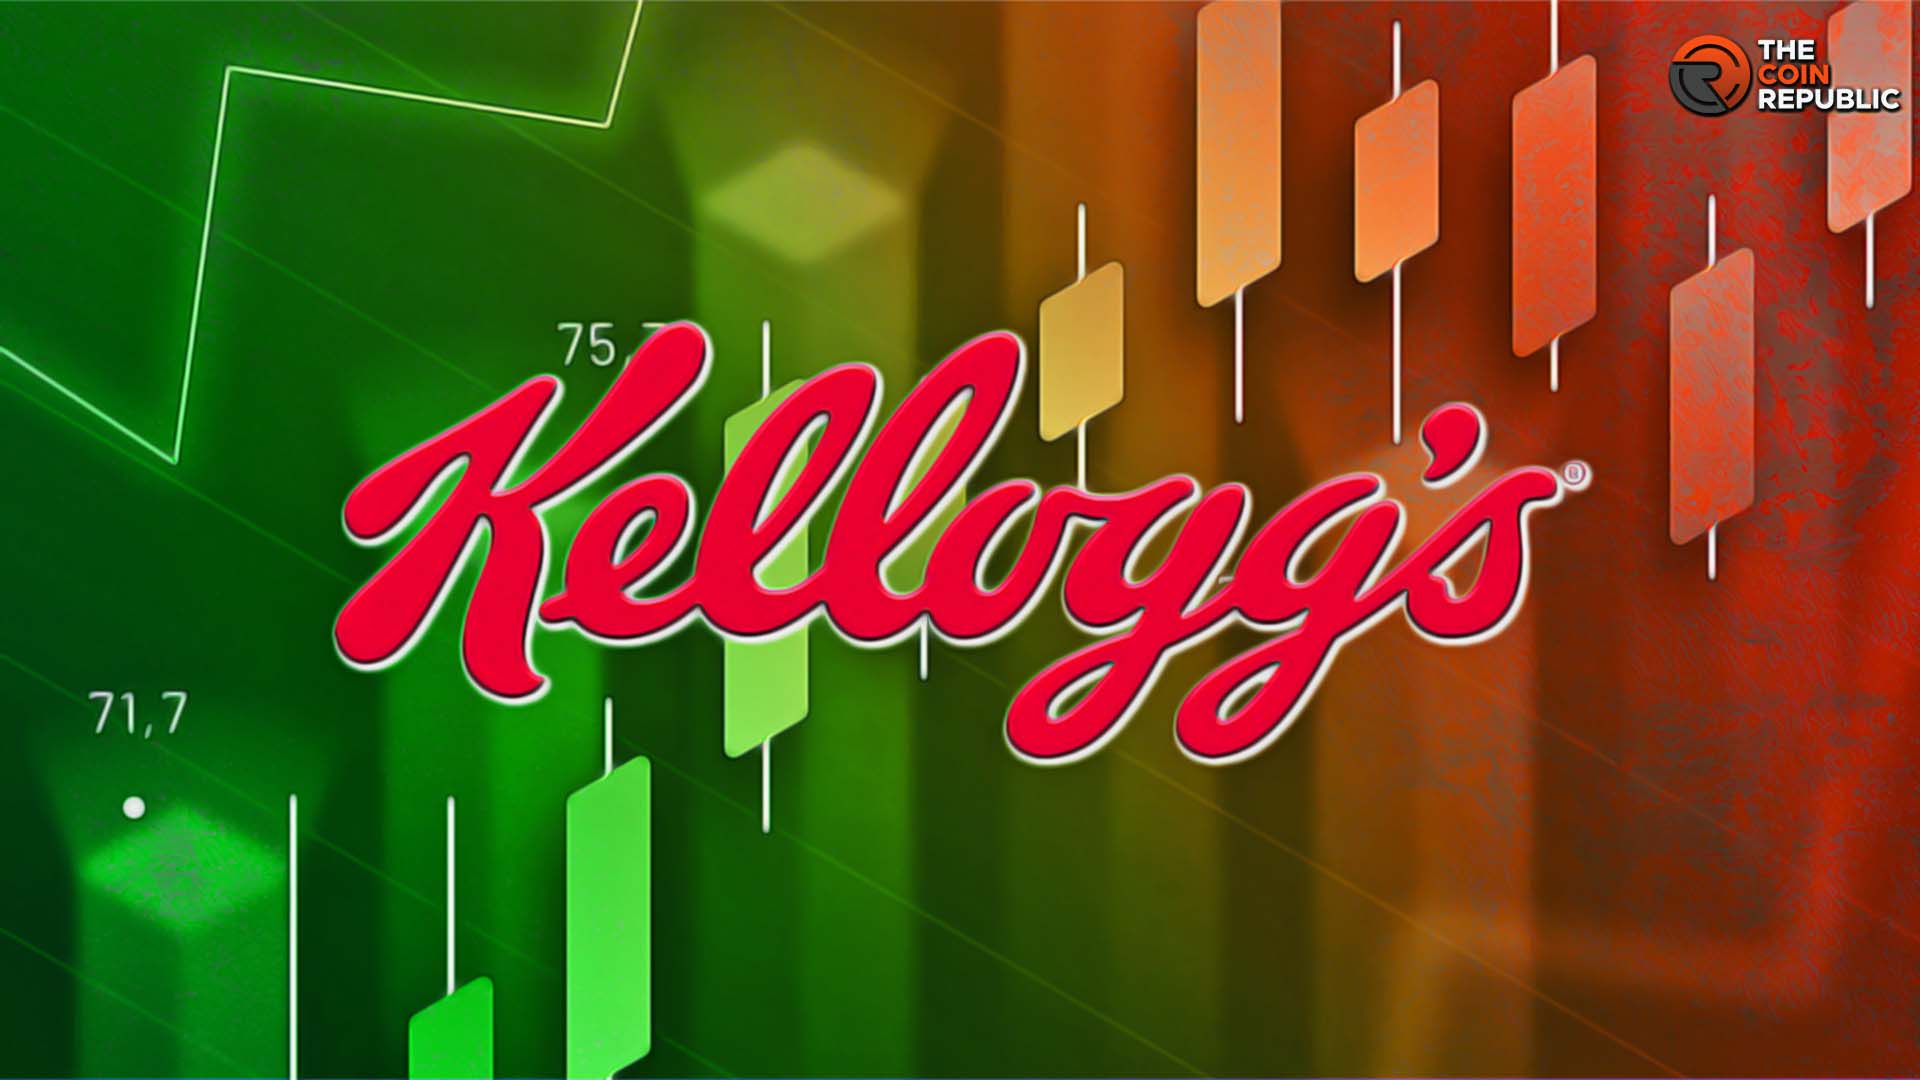 Kellogg Stock (NYSE: K): Bulls in a Trap or Fake Selloff?